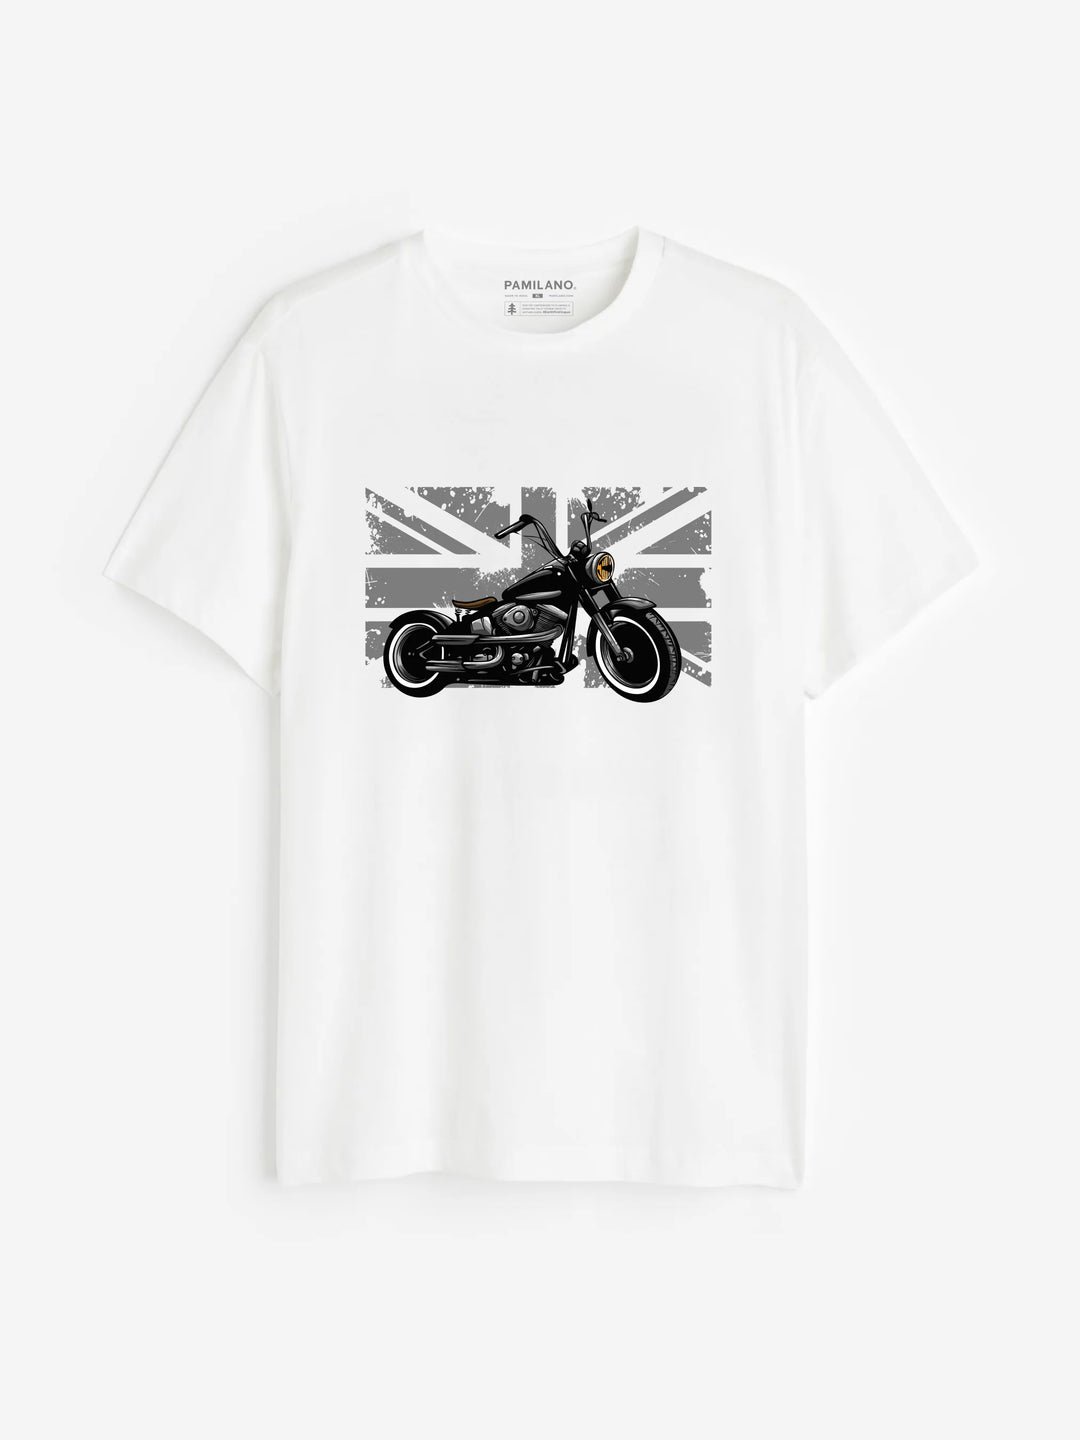 Motorcycle - Unisex T-Shirt